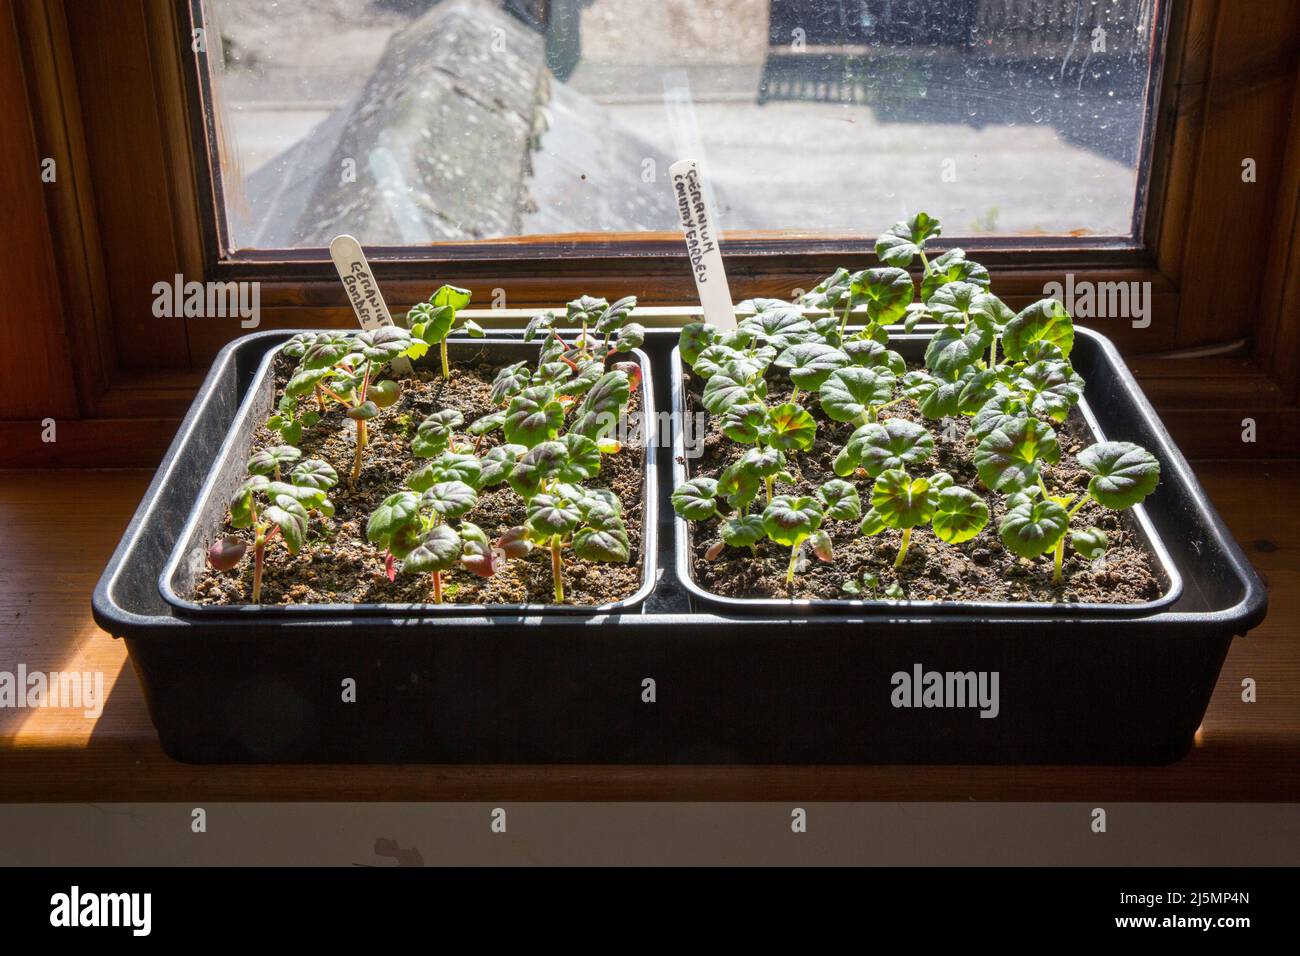 Geranium Sämling Pflanzen wachsen auf einer Fensterbank. Stockfoto